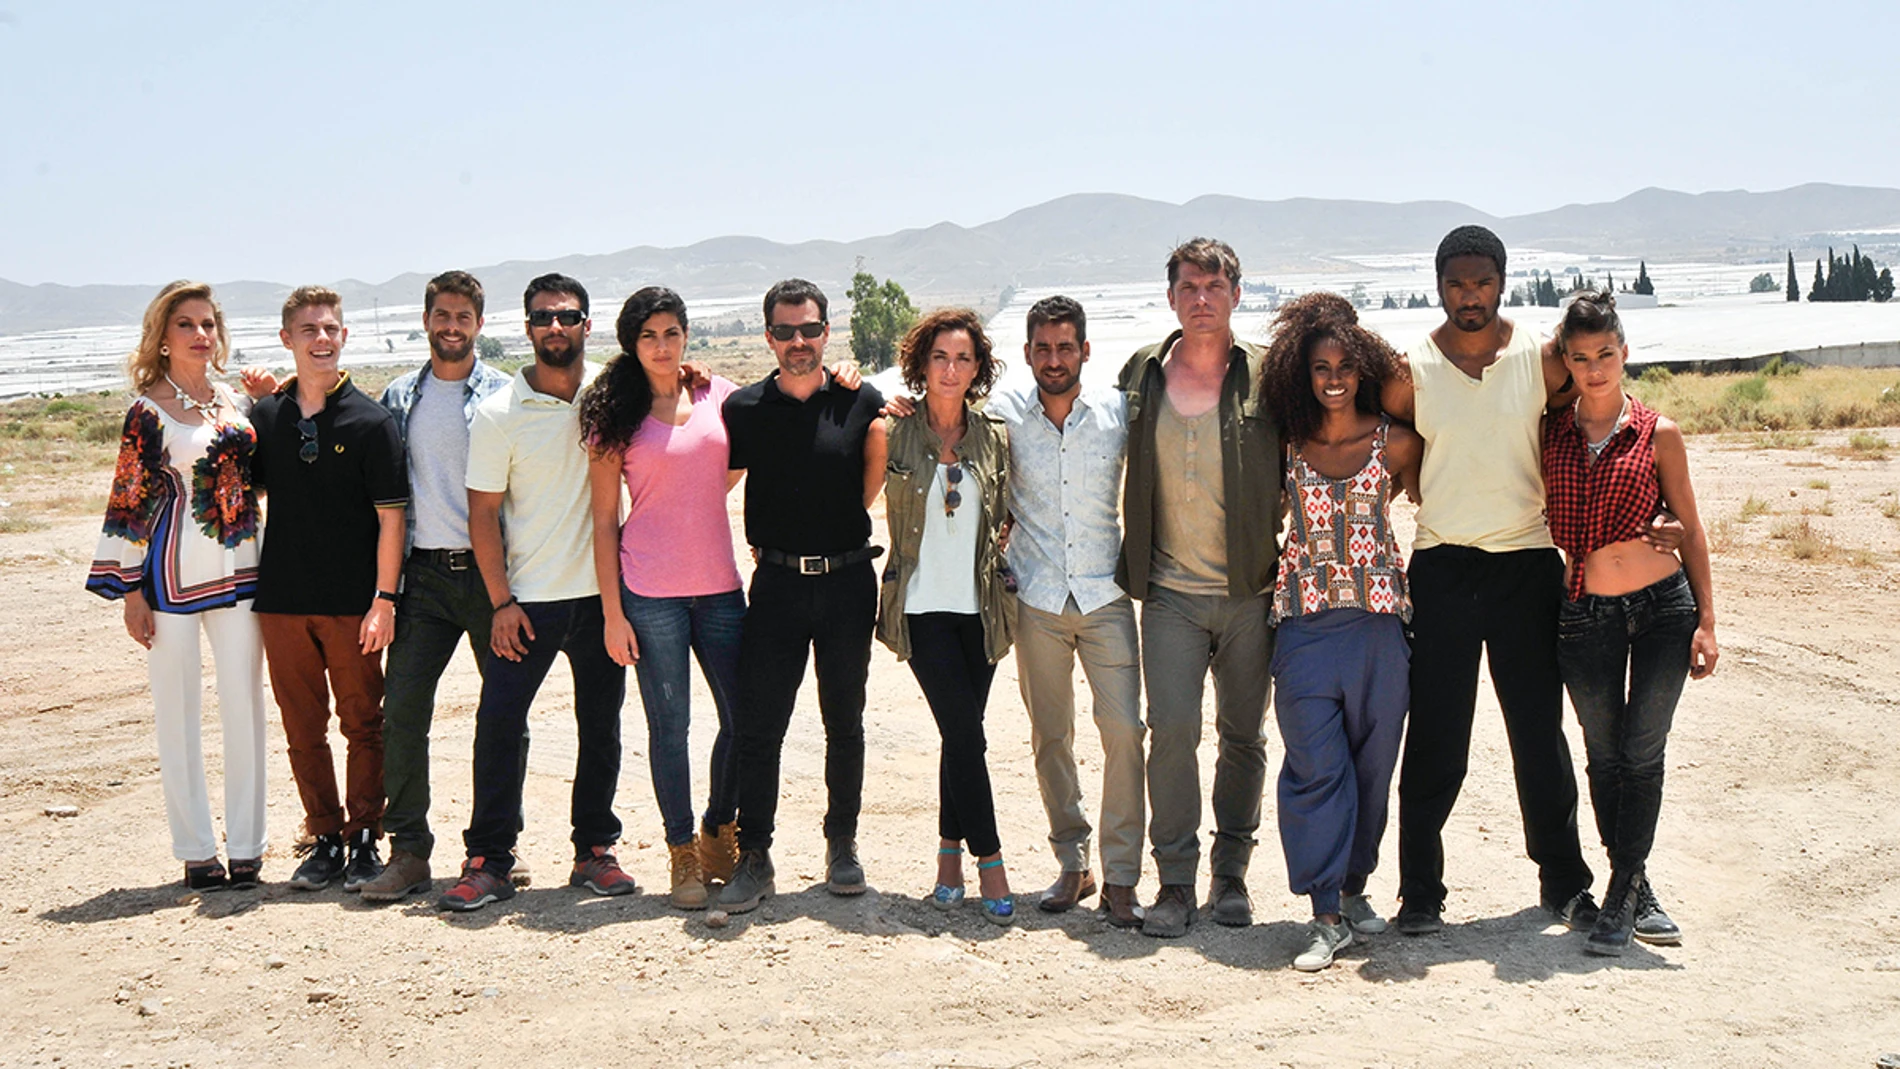 El elenco de actores en el rodaje de 'Mar de plástico' en Almería 